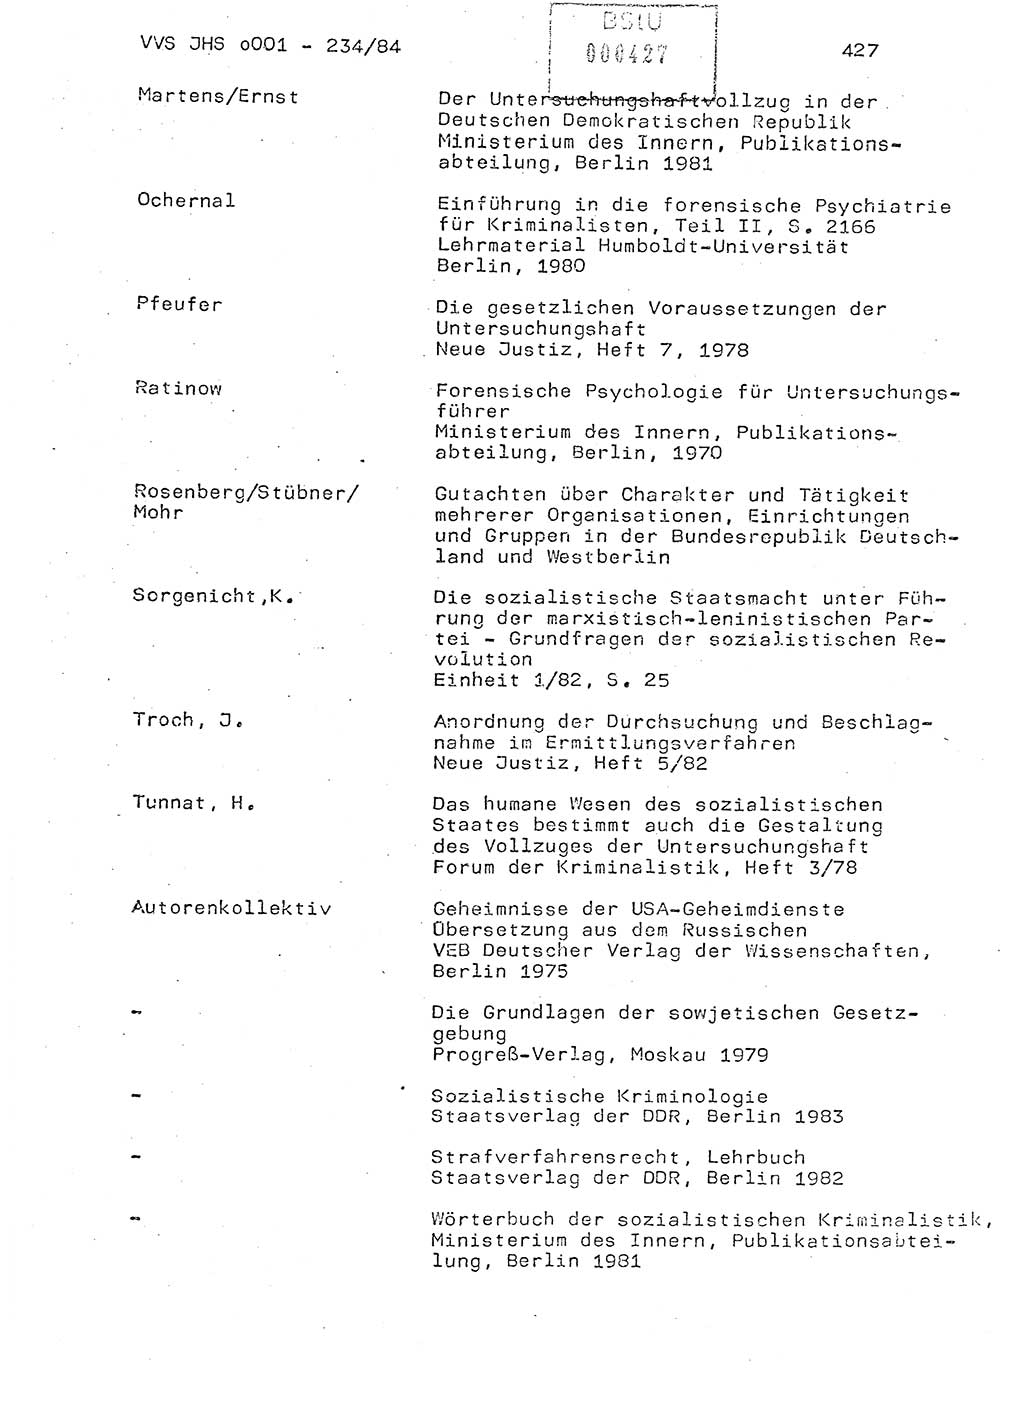 Dissertation Oberst Siegfried Rataizick (Abt. ⅩⅣ), Oberstleutnant Volkmar Heinz (Abt. ⅩⅣ), Oberstleutnant Werner Stein (HA Ⅸ), Hauptmann Heinz Conrad (JHS), Ministerium für Staatssicherheit (MfS) [Deutsche Demokratische Republik (DDR)], Juristische Hochschule (JHS), Vertrauliche Verschlußsache (VVS) o001-234/84, Potsdam 1984, Seite 427 (Diss. MfS DDR JHS VVS o001-234/84 1984, S. 427)